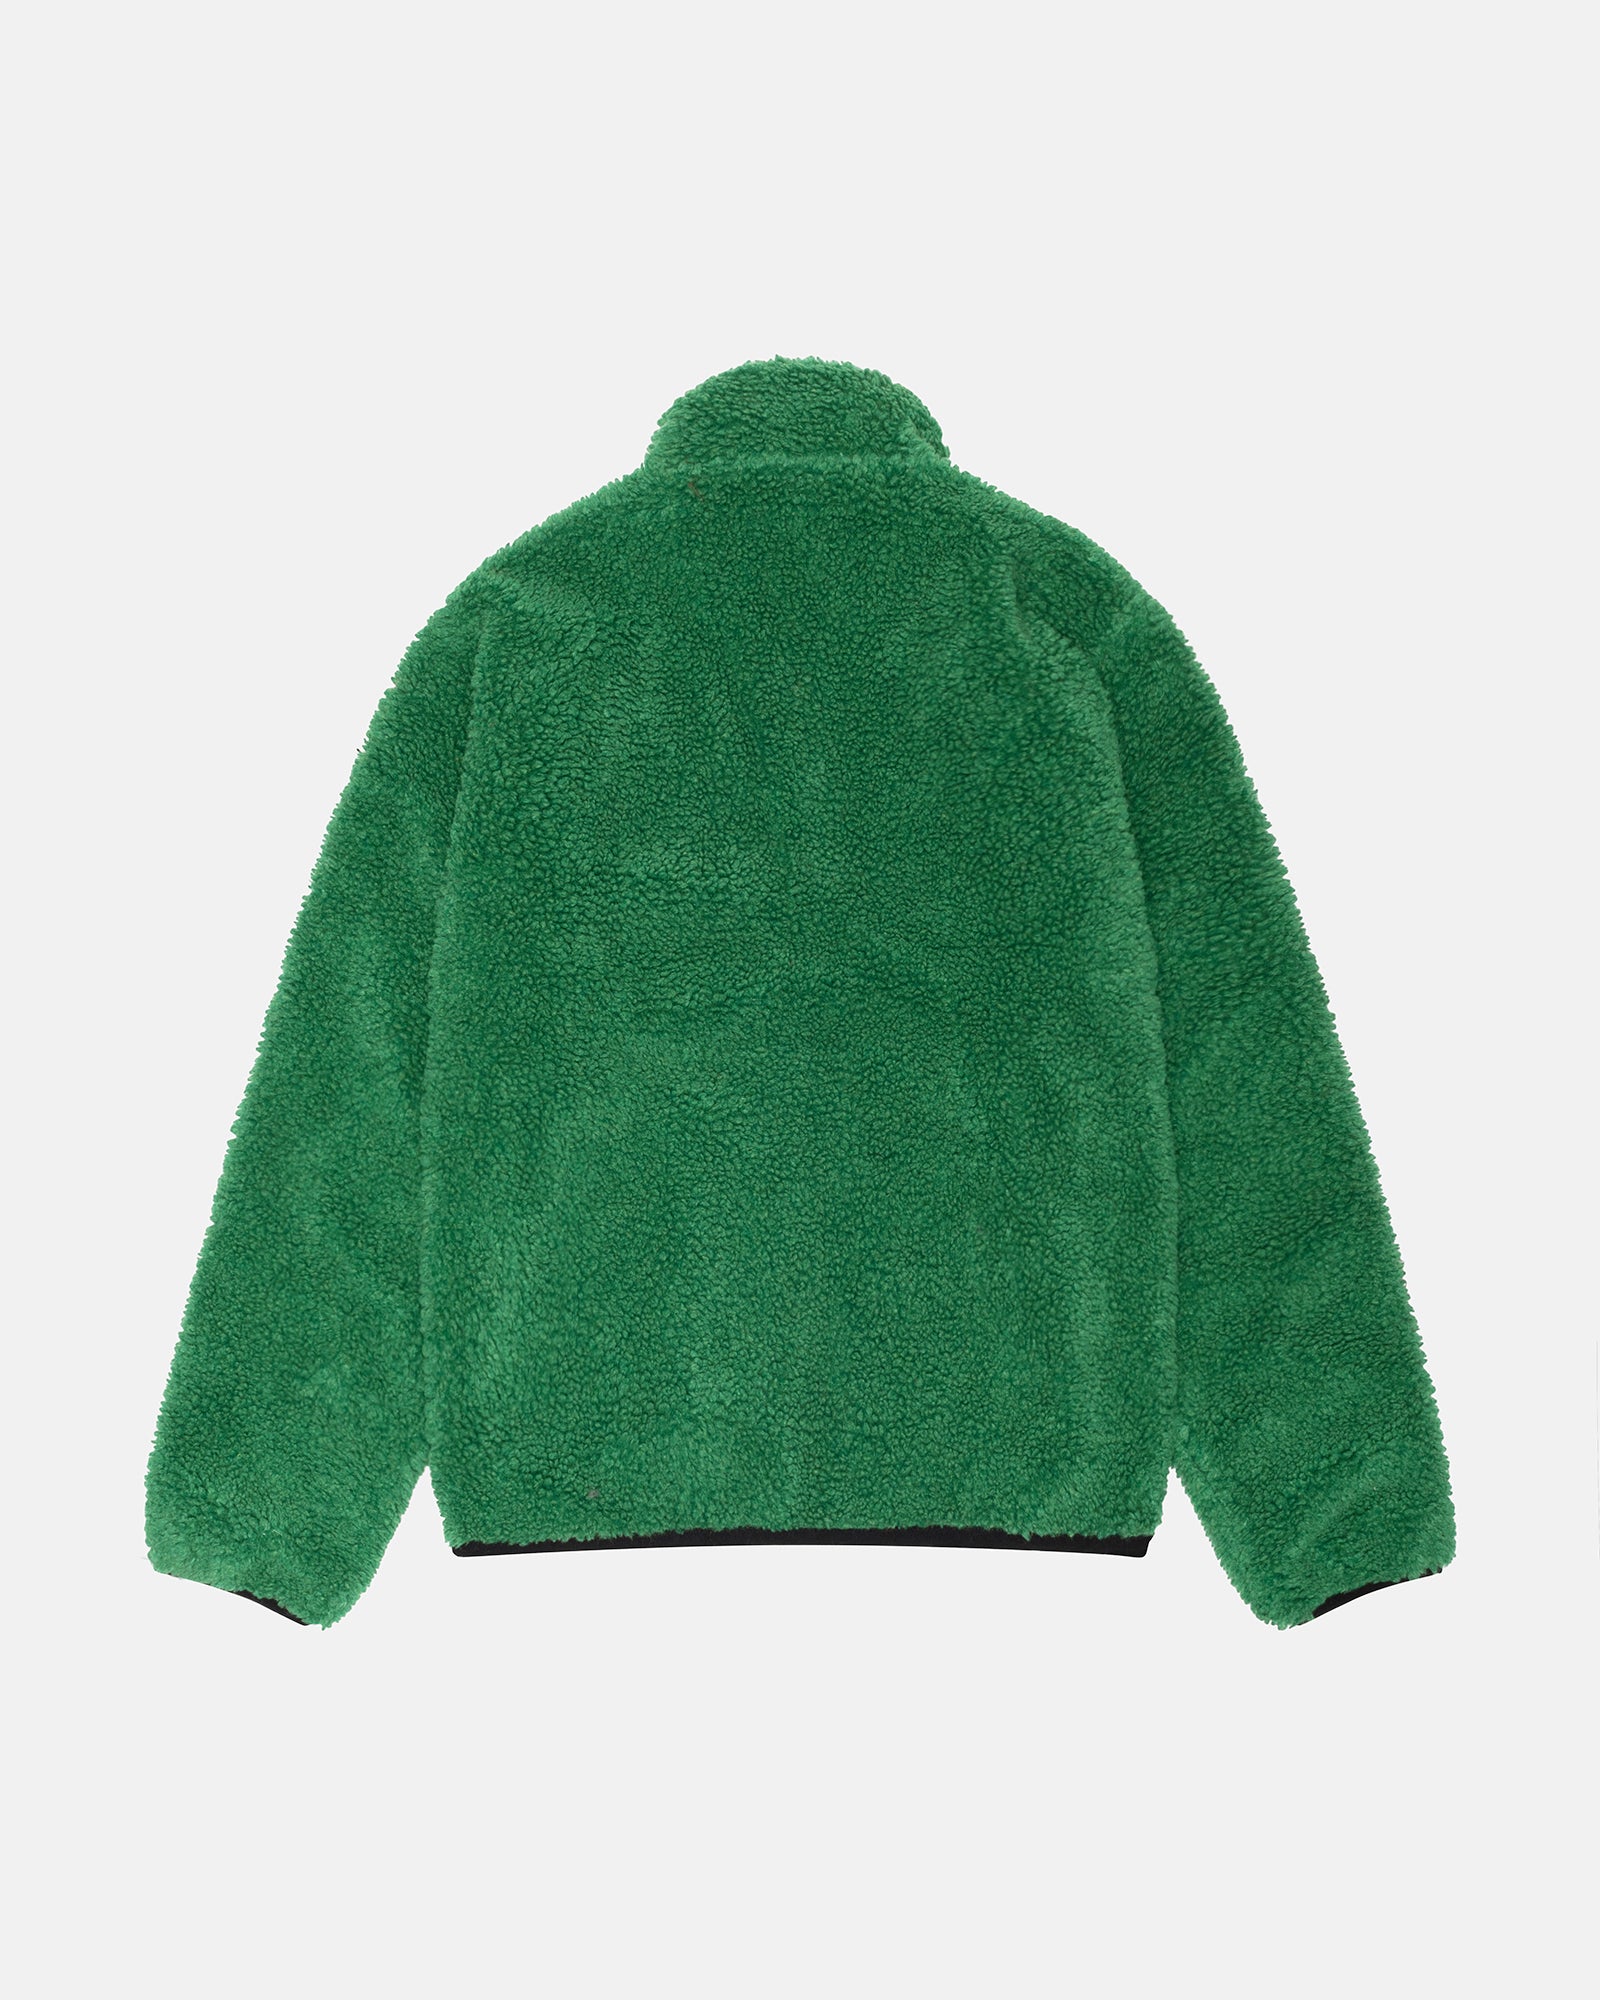 Sherpa Reversible Jacket in green – Stüssy Japan